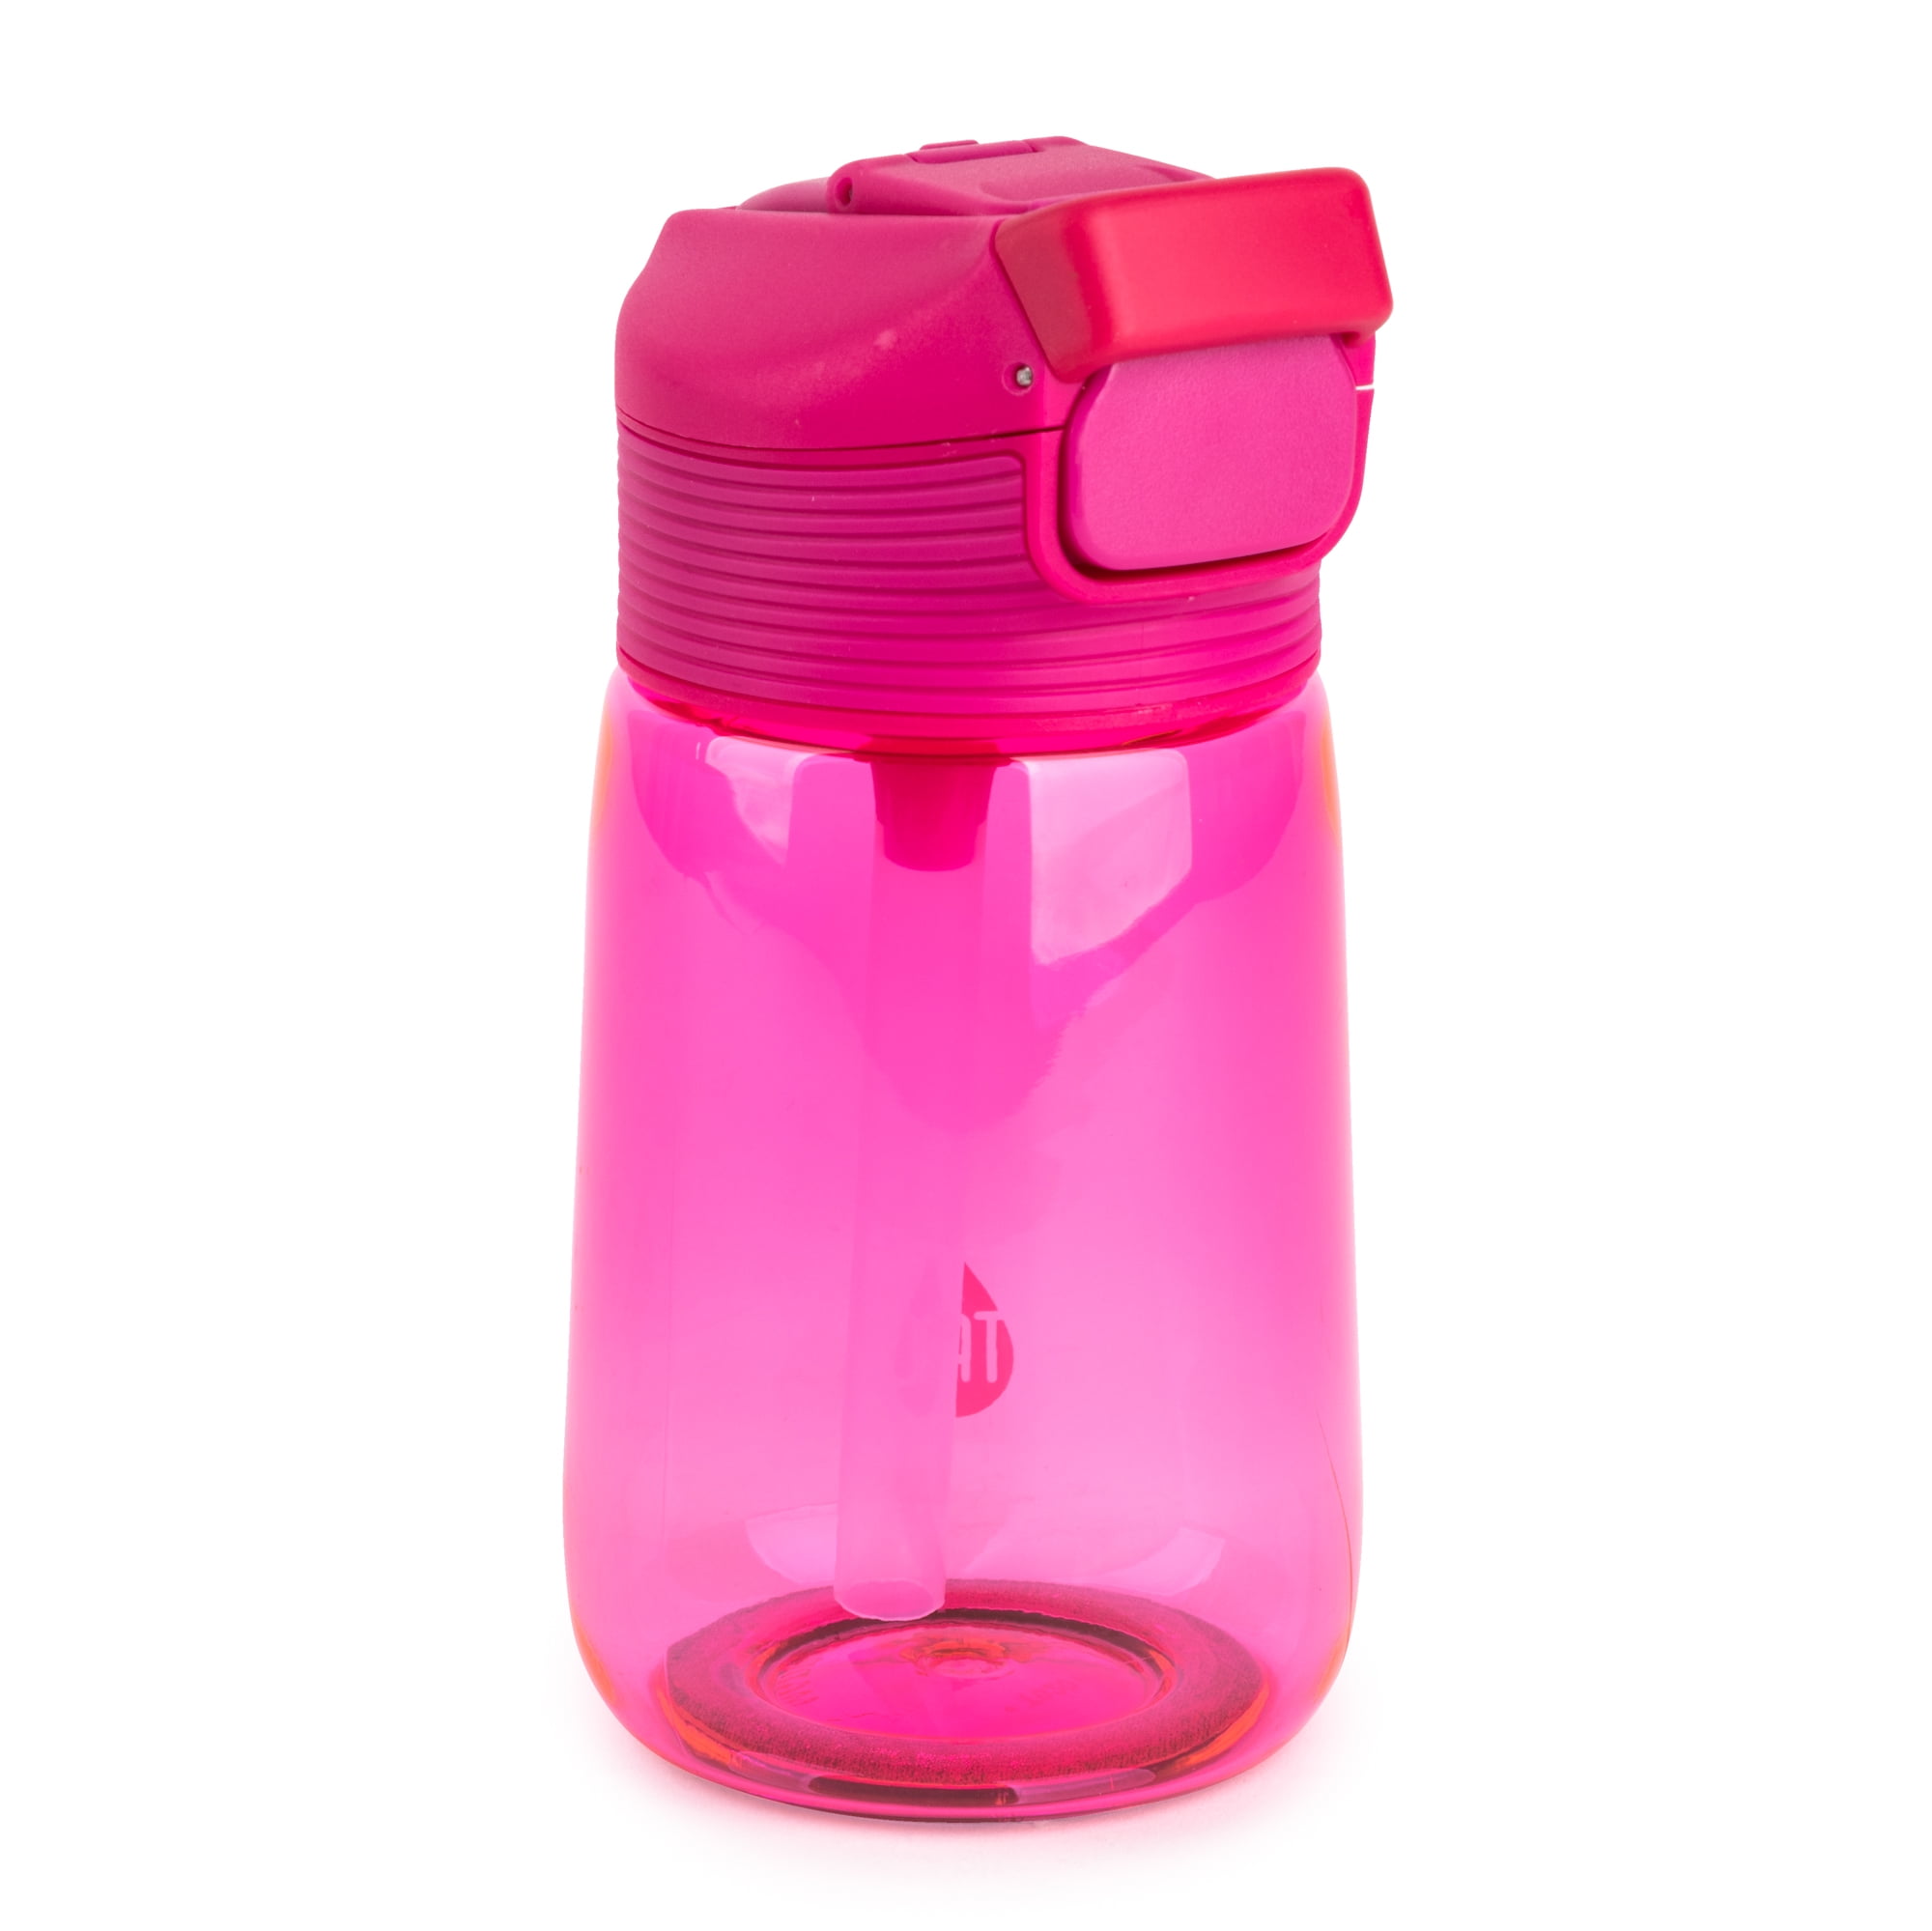 20 oz. Flip Straw Tritan Sport Water Bottle — San Diego Children's